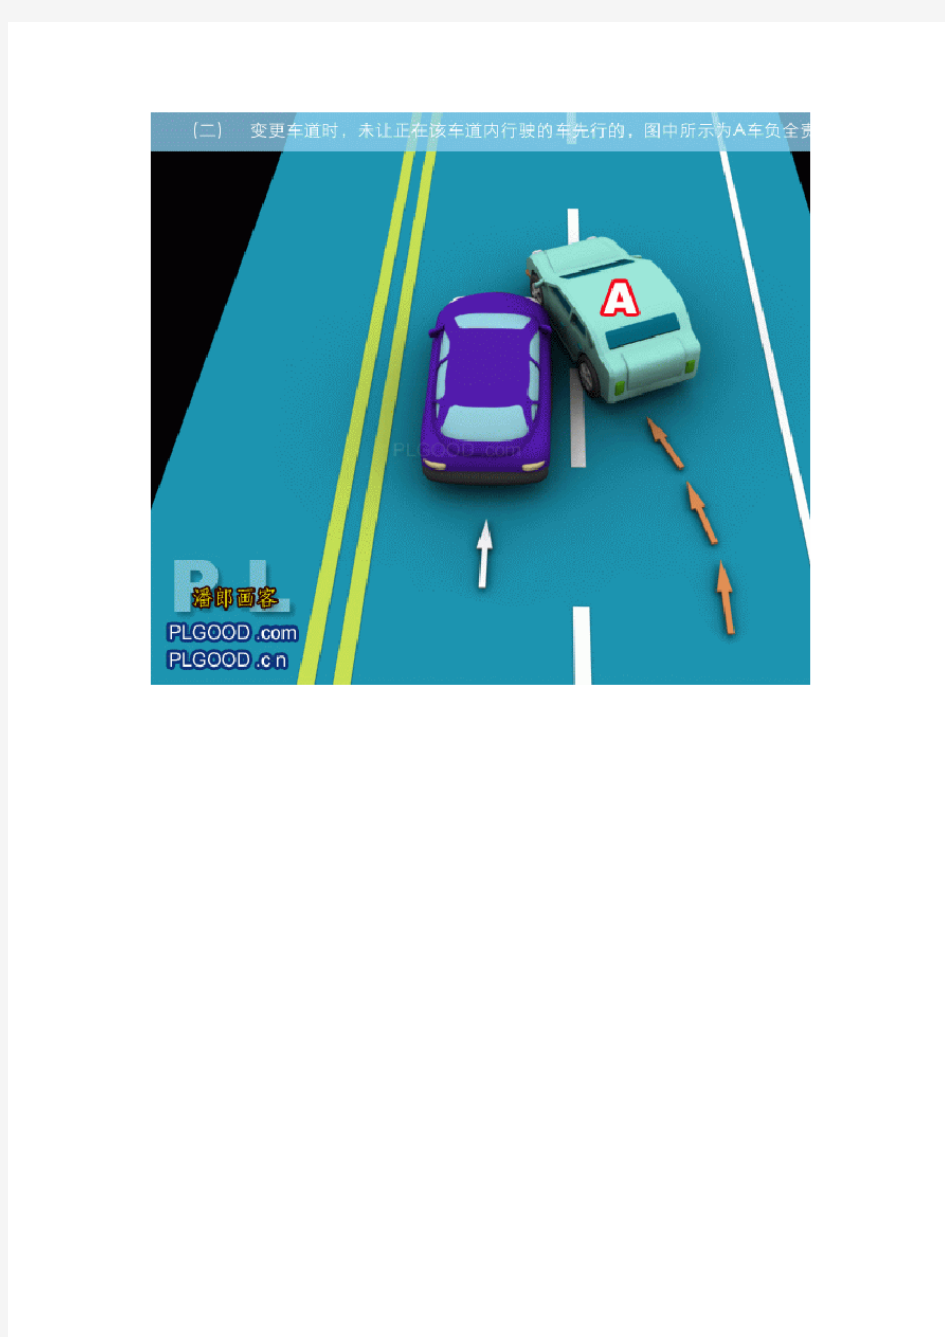 最新版交通事故责任划分-2011版 [图片]